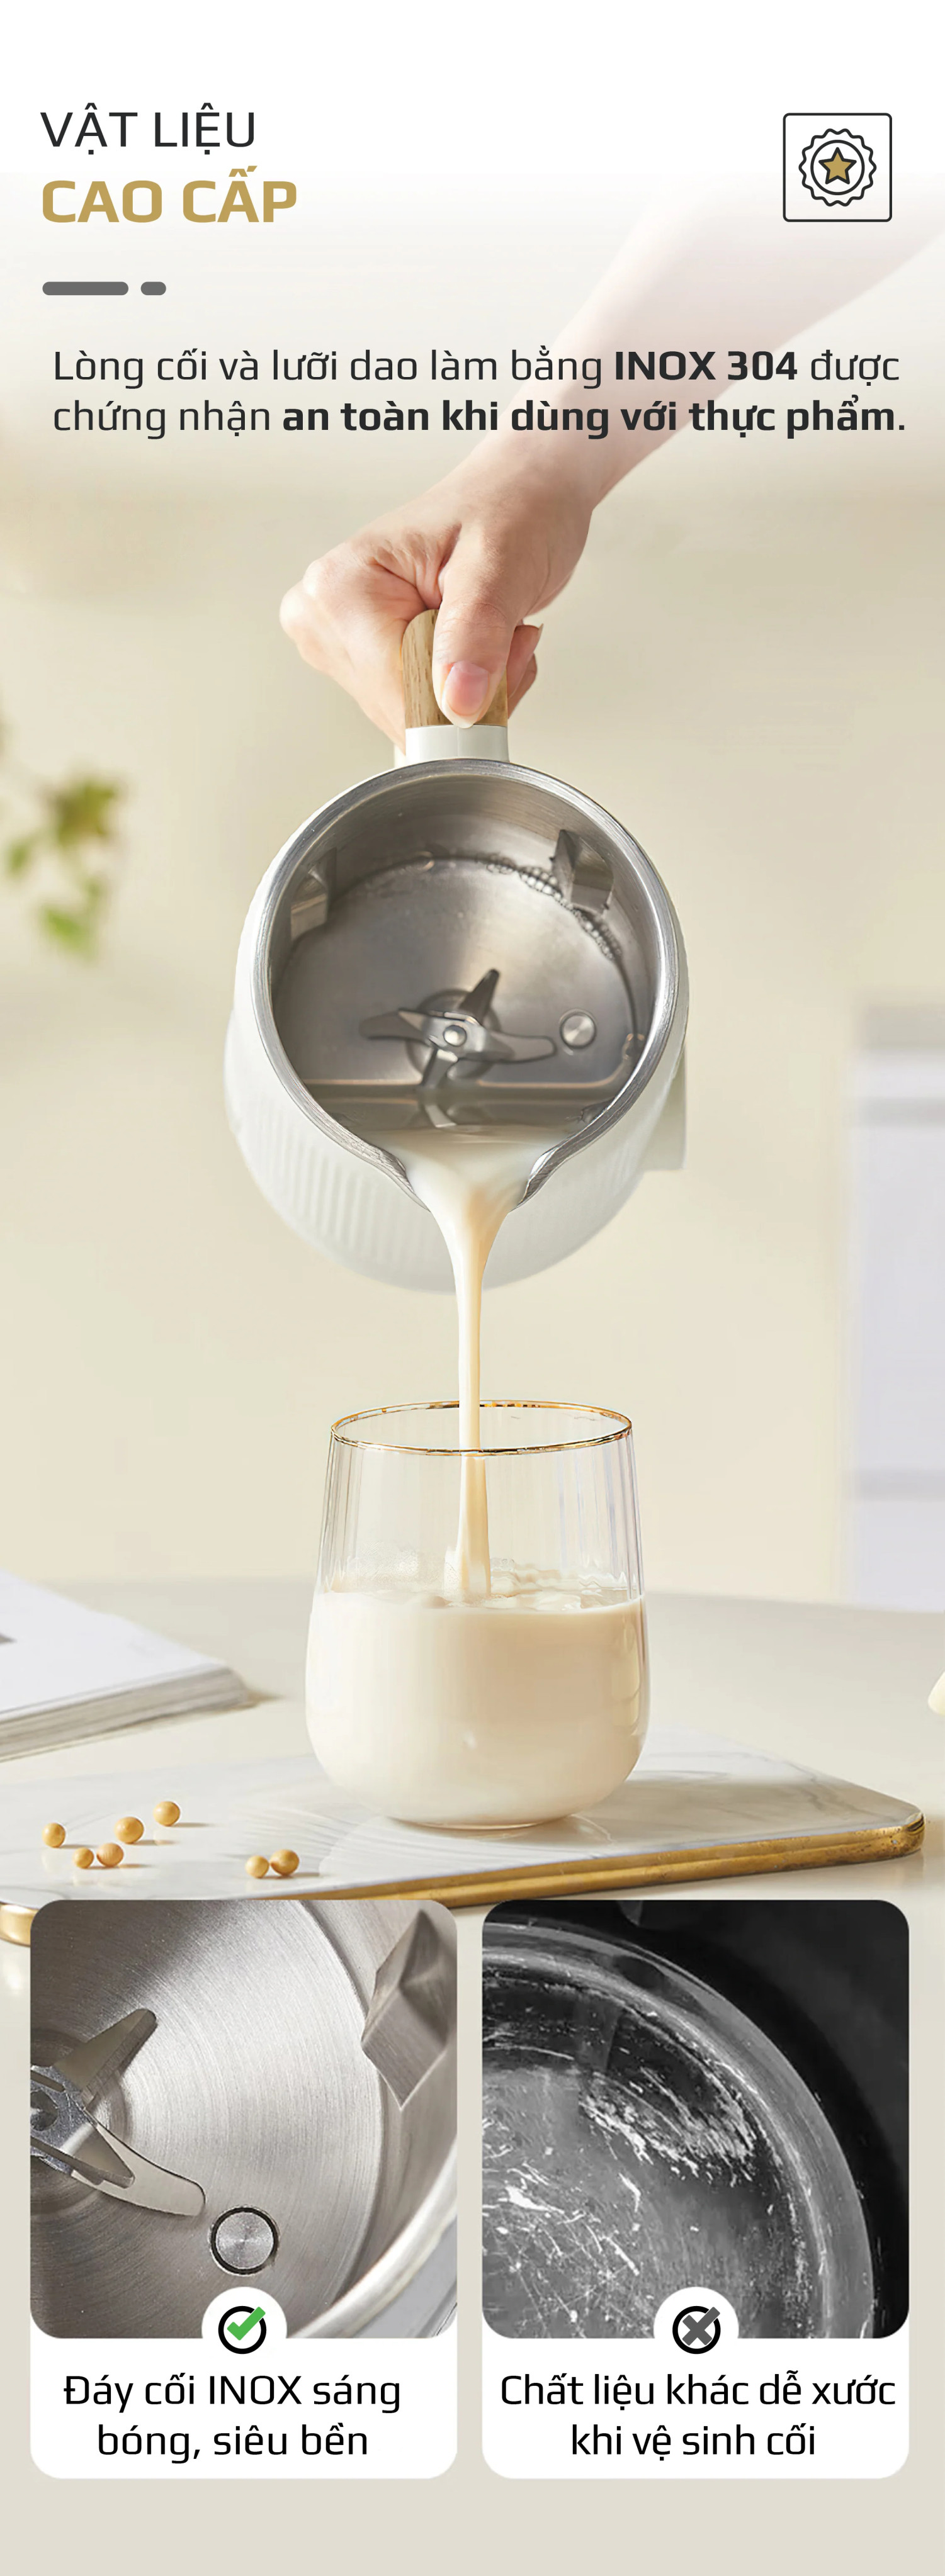 Máy xay nấu sữa hạt đa năng Olivo CB400 - Dung tích 400ml - 7 Chức Năng - Thiết kế nhỏ gọn - Hàng chính hãng